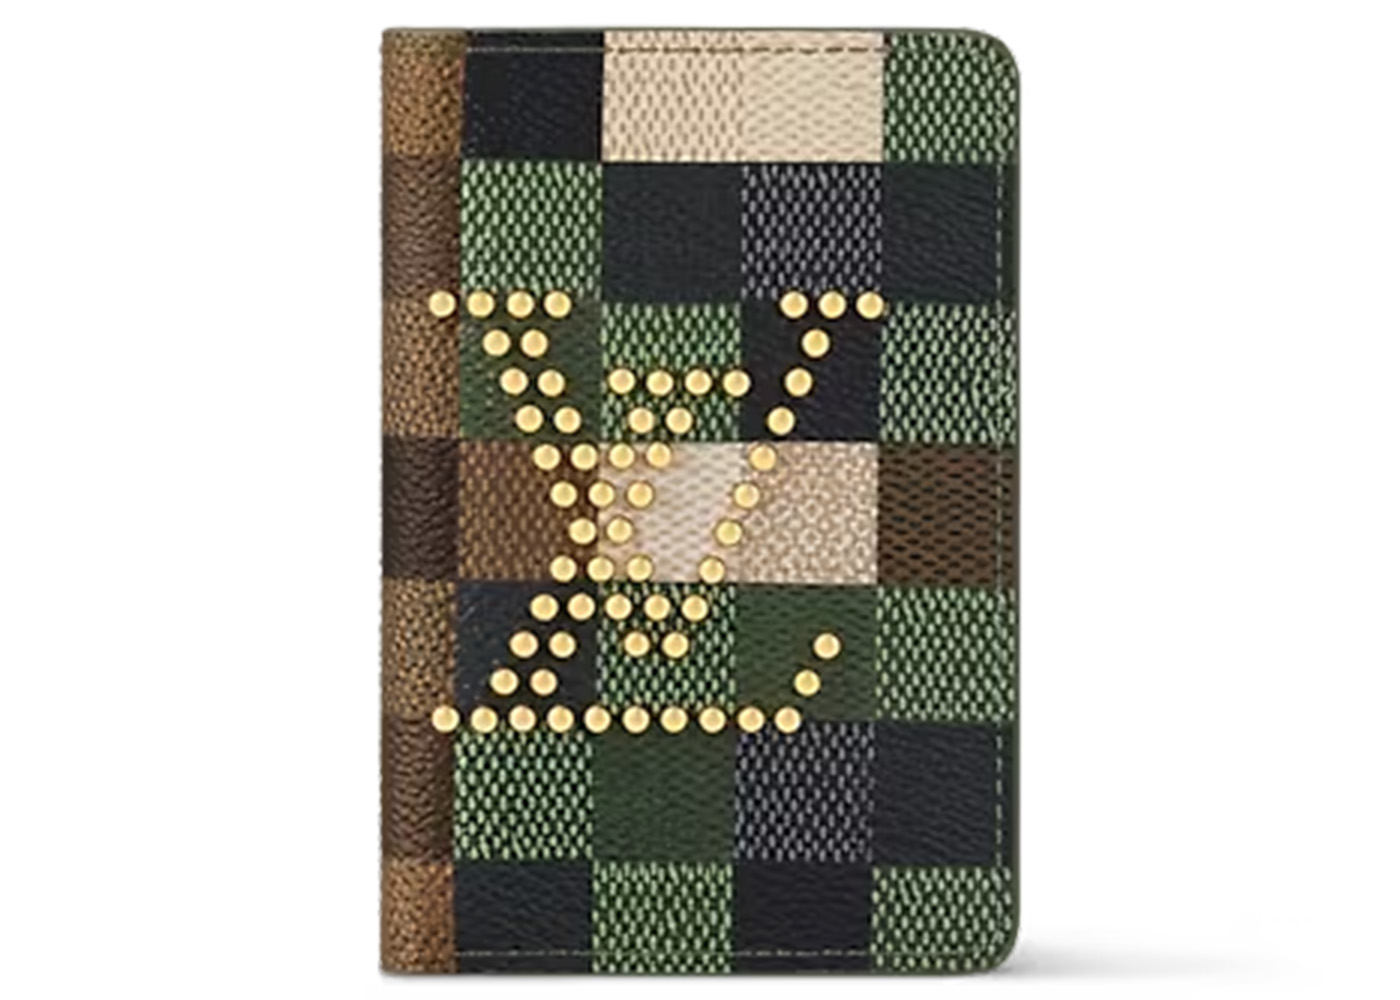 Louis Vuitton Slender Wallet Damoflage Green Damoflage Damier